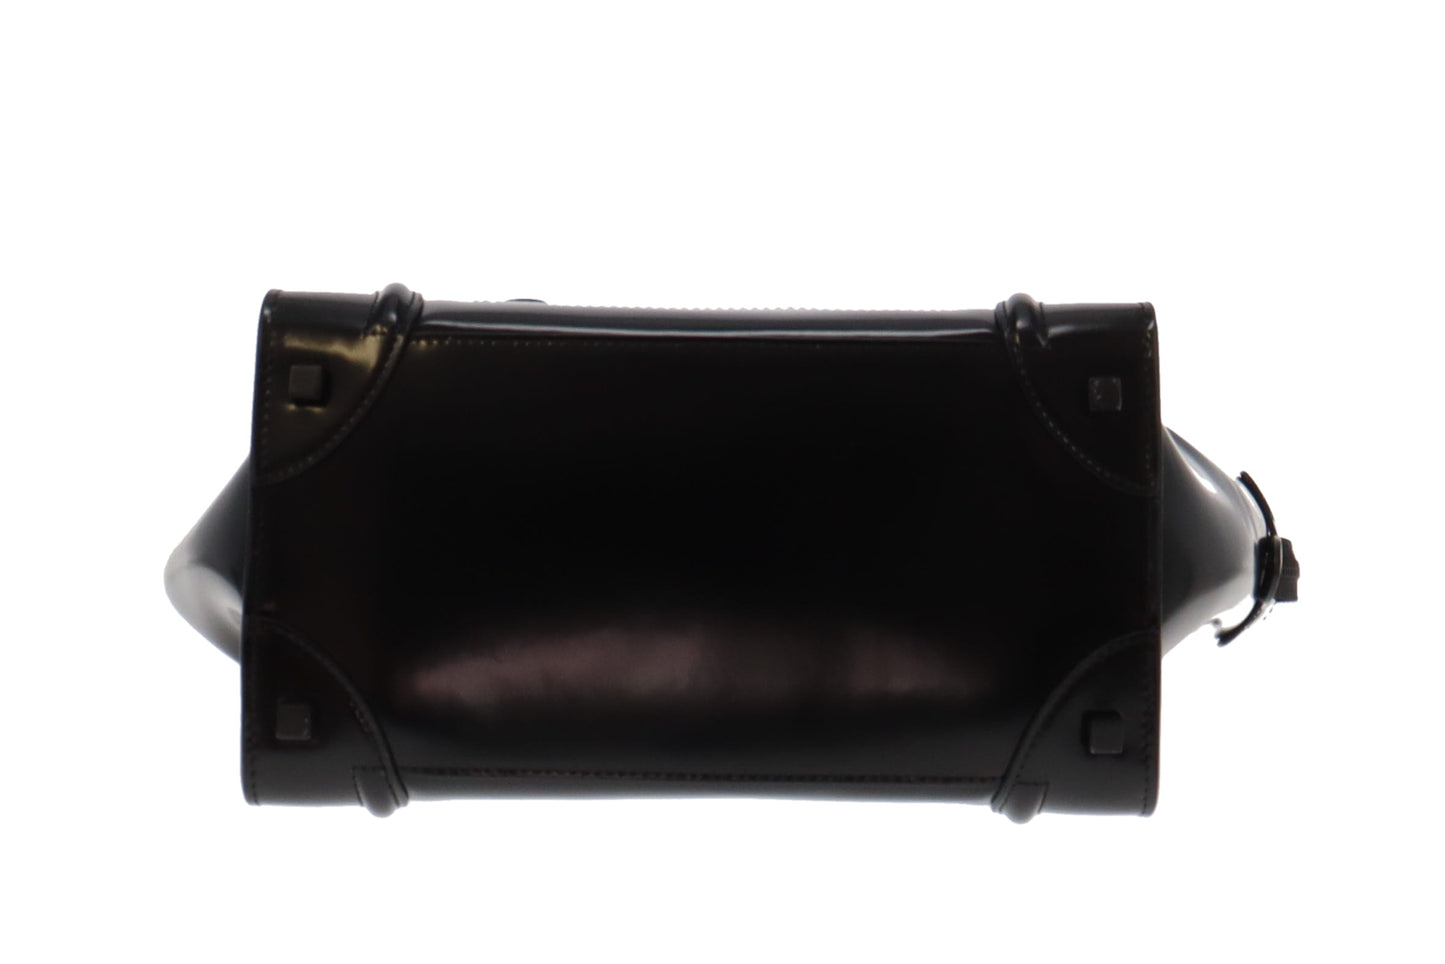 Celine Mini Luggage Black Patent